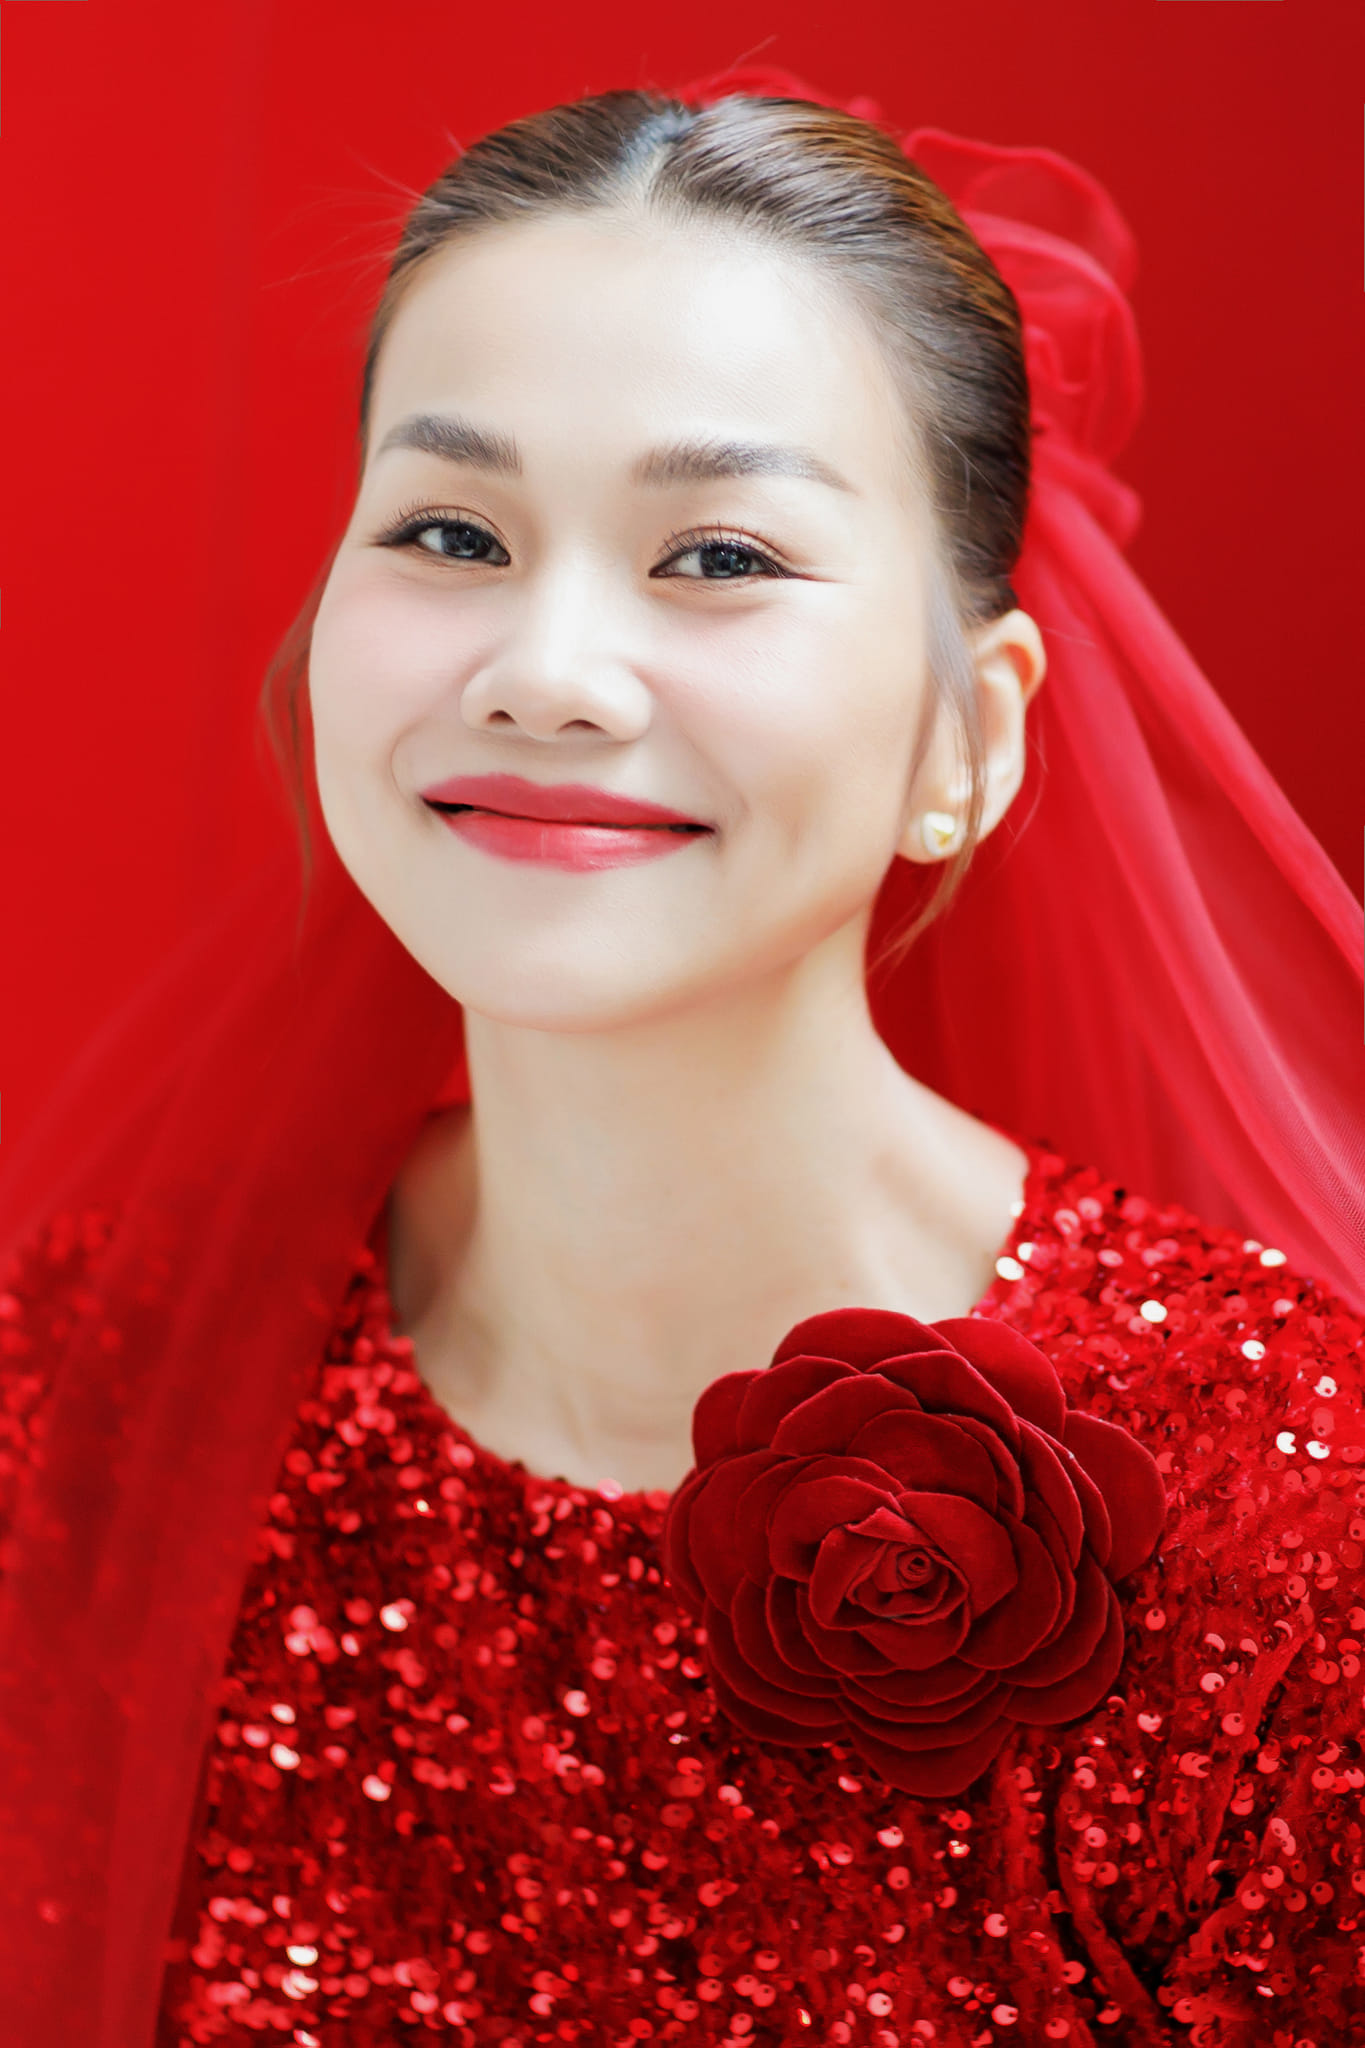 Hình ảnh từ hôn lễ của siêu mẫu Thanh Hằng, cô dâu đẹp rực rỡ trong sắc đỏ về nhà chồng - ảnh 3